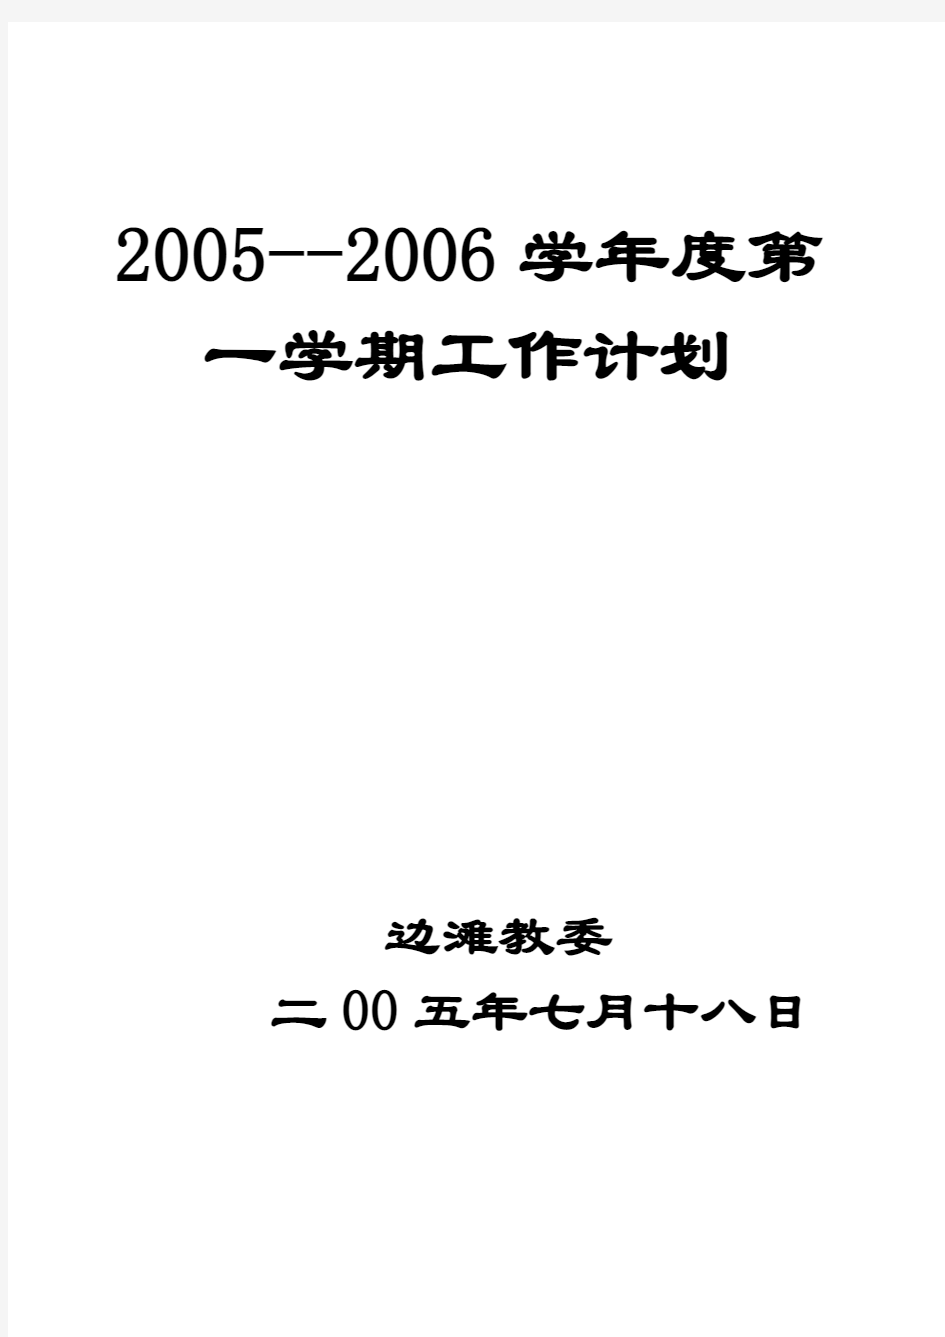 2005-2006第一学期计划